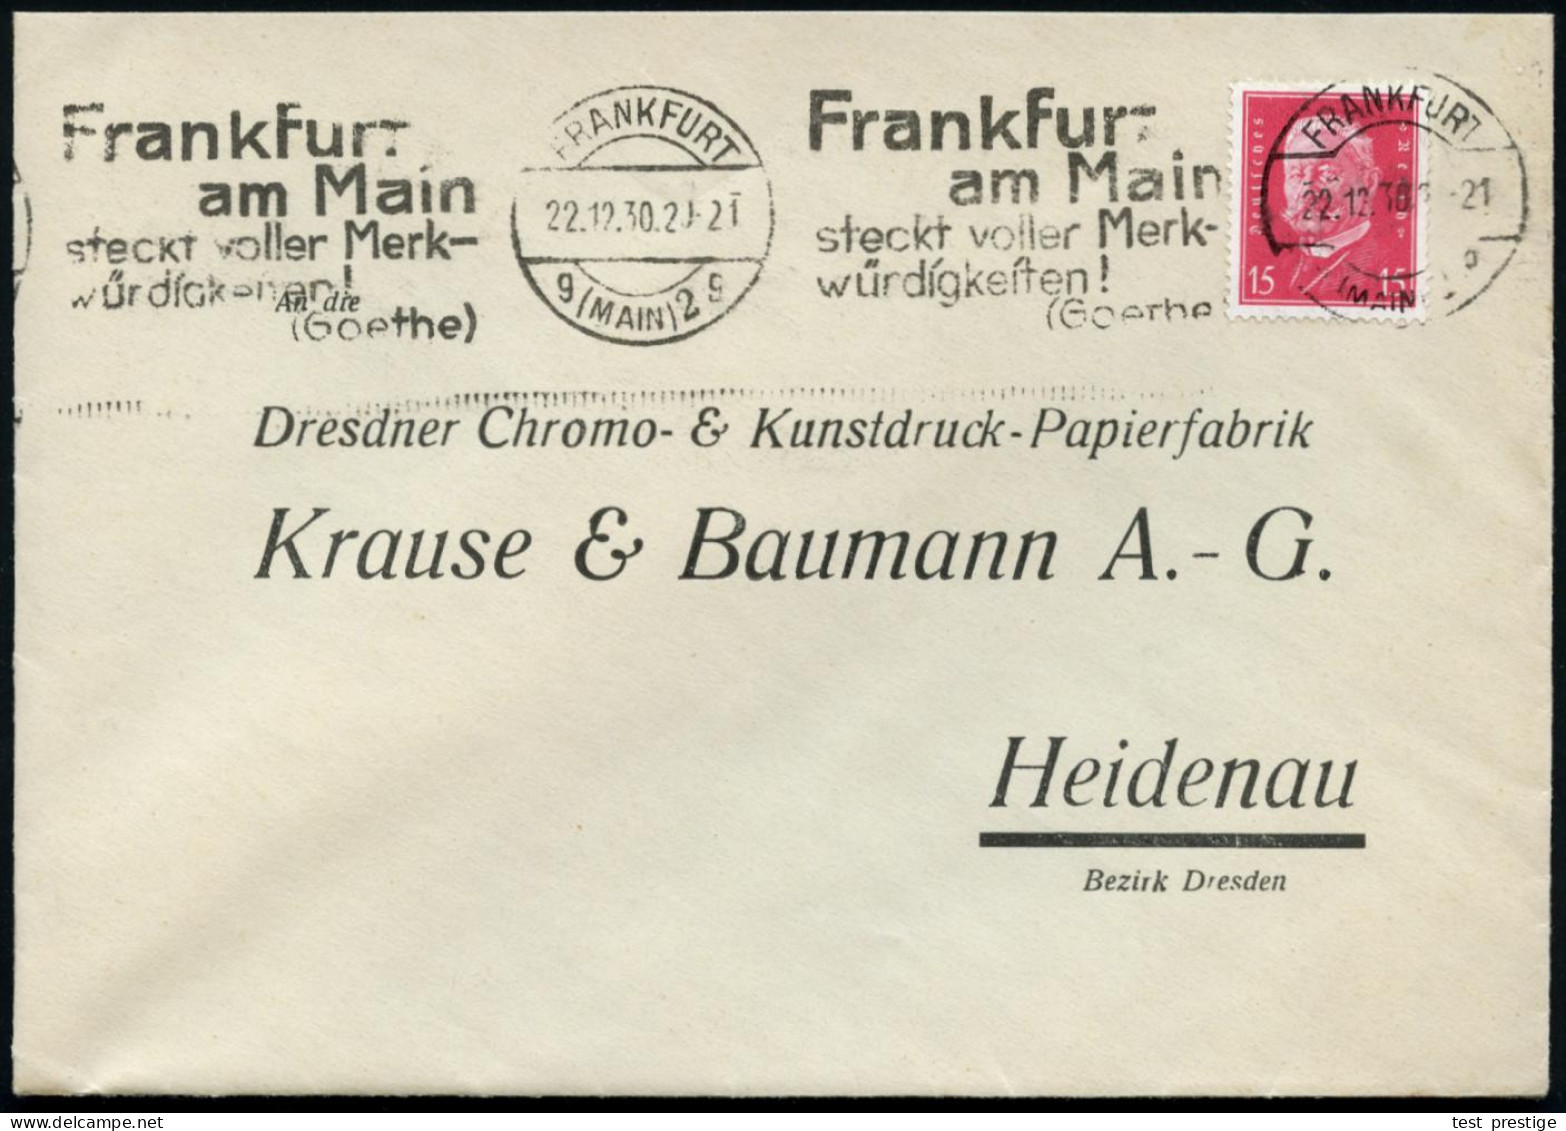 FRANKFURT/ G(MAIN)2/ G/ Frankfurt/ ..steckt Voller Merk-/ Würdigkeiten!/ (Goethe) 1931 (18.10.) Band-MWSt Klar Auf Firme - Schriftsteller